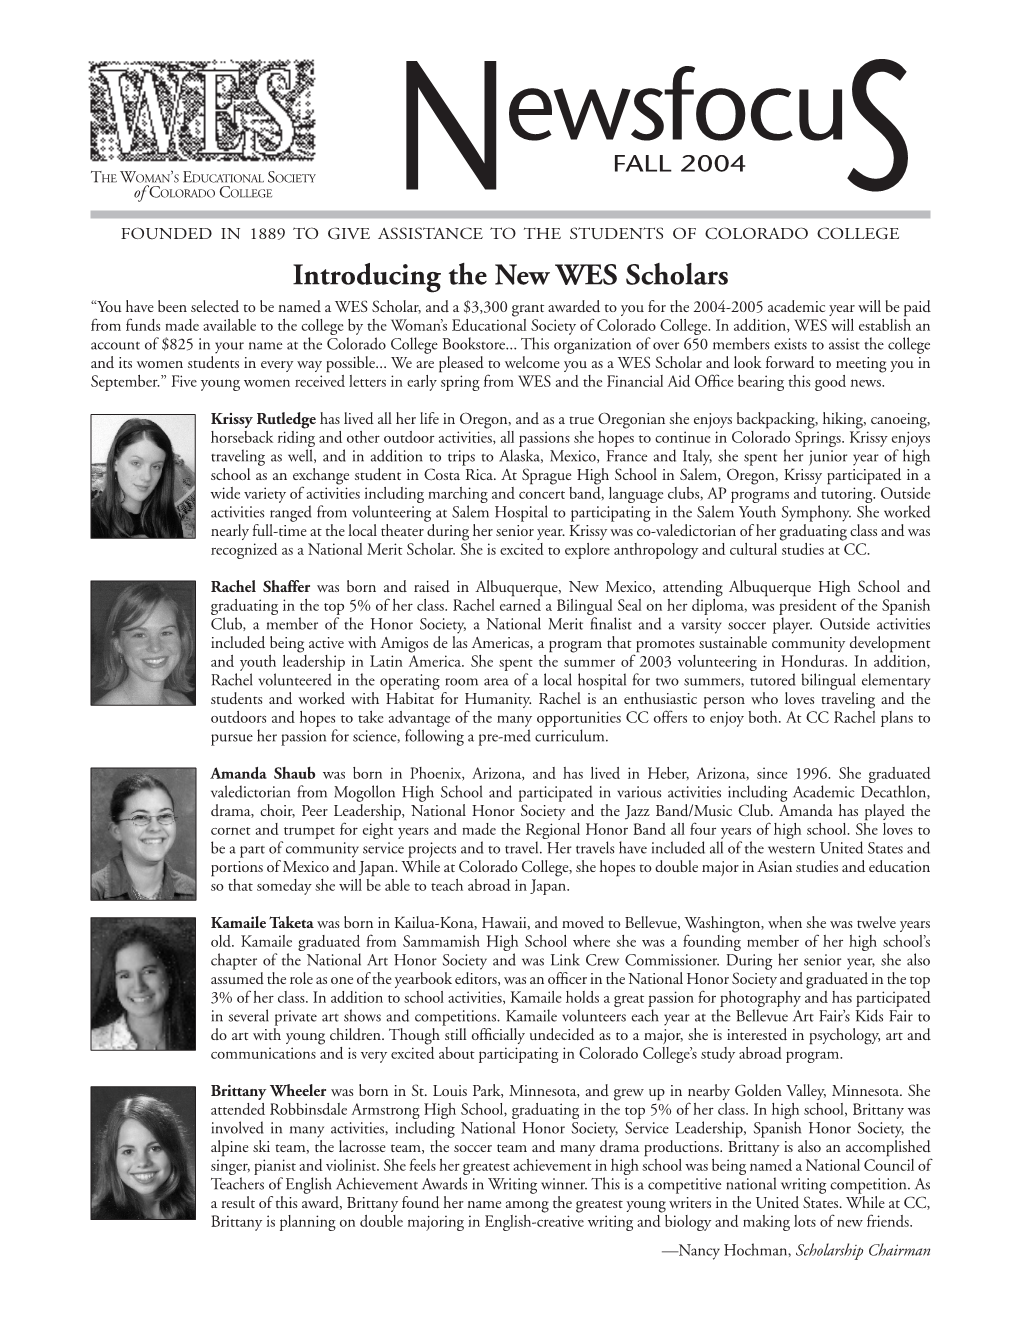 Fall 2004 Newsfocus